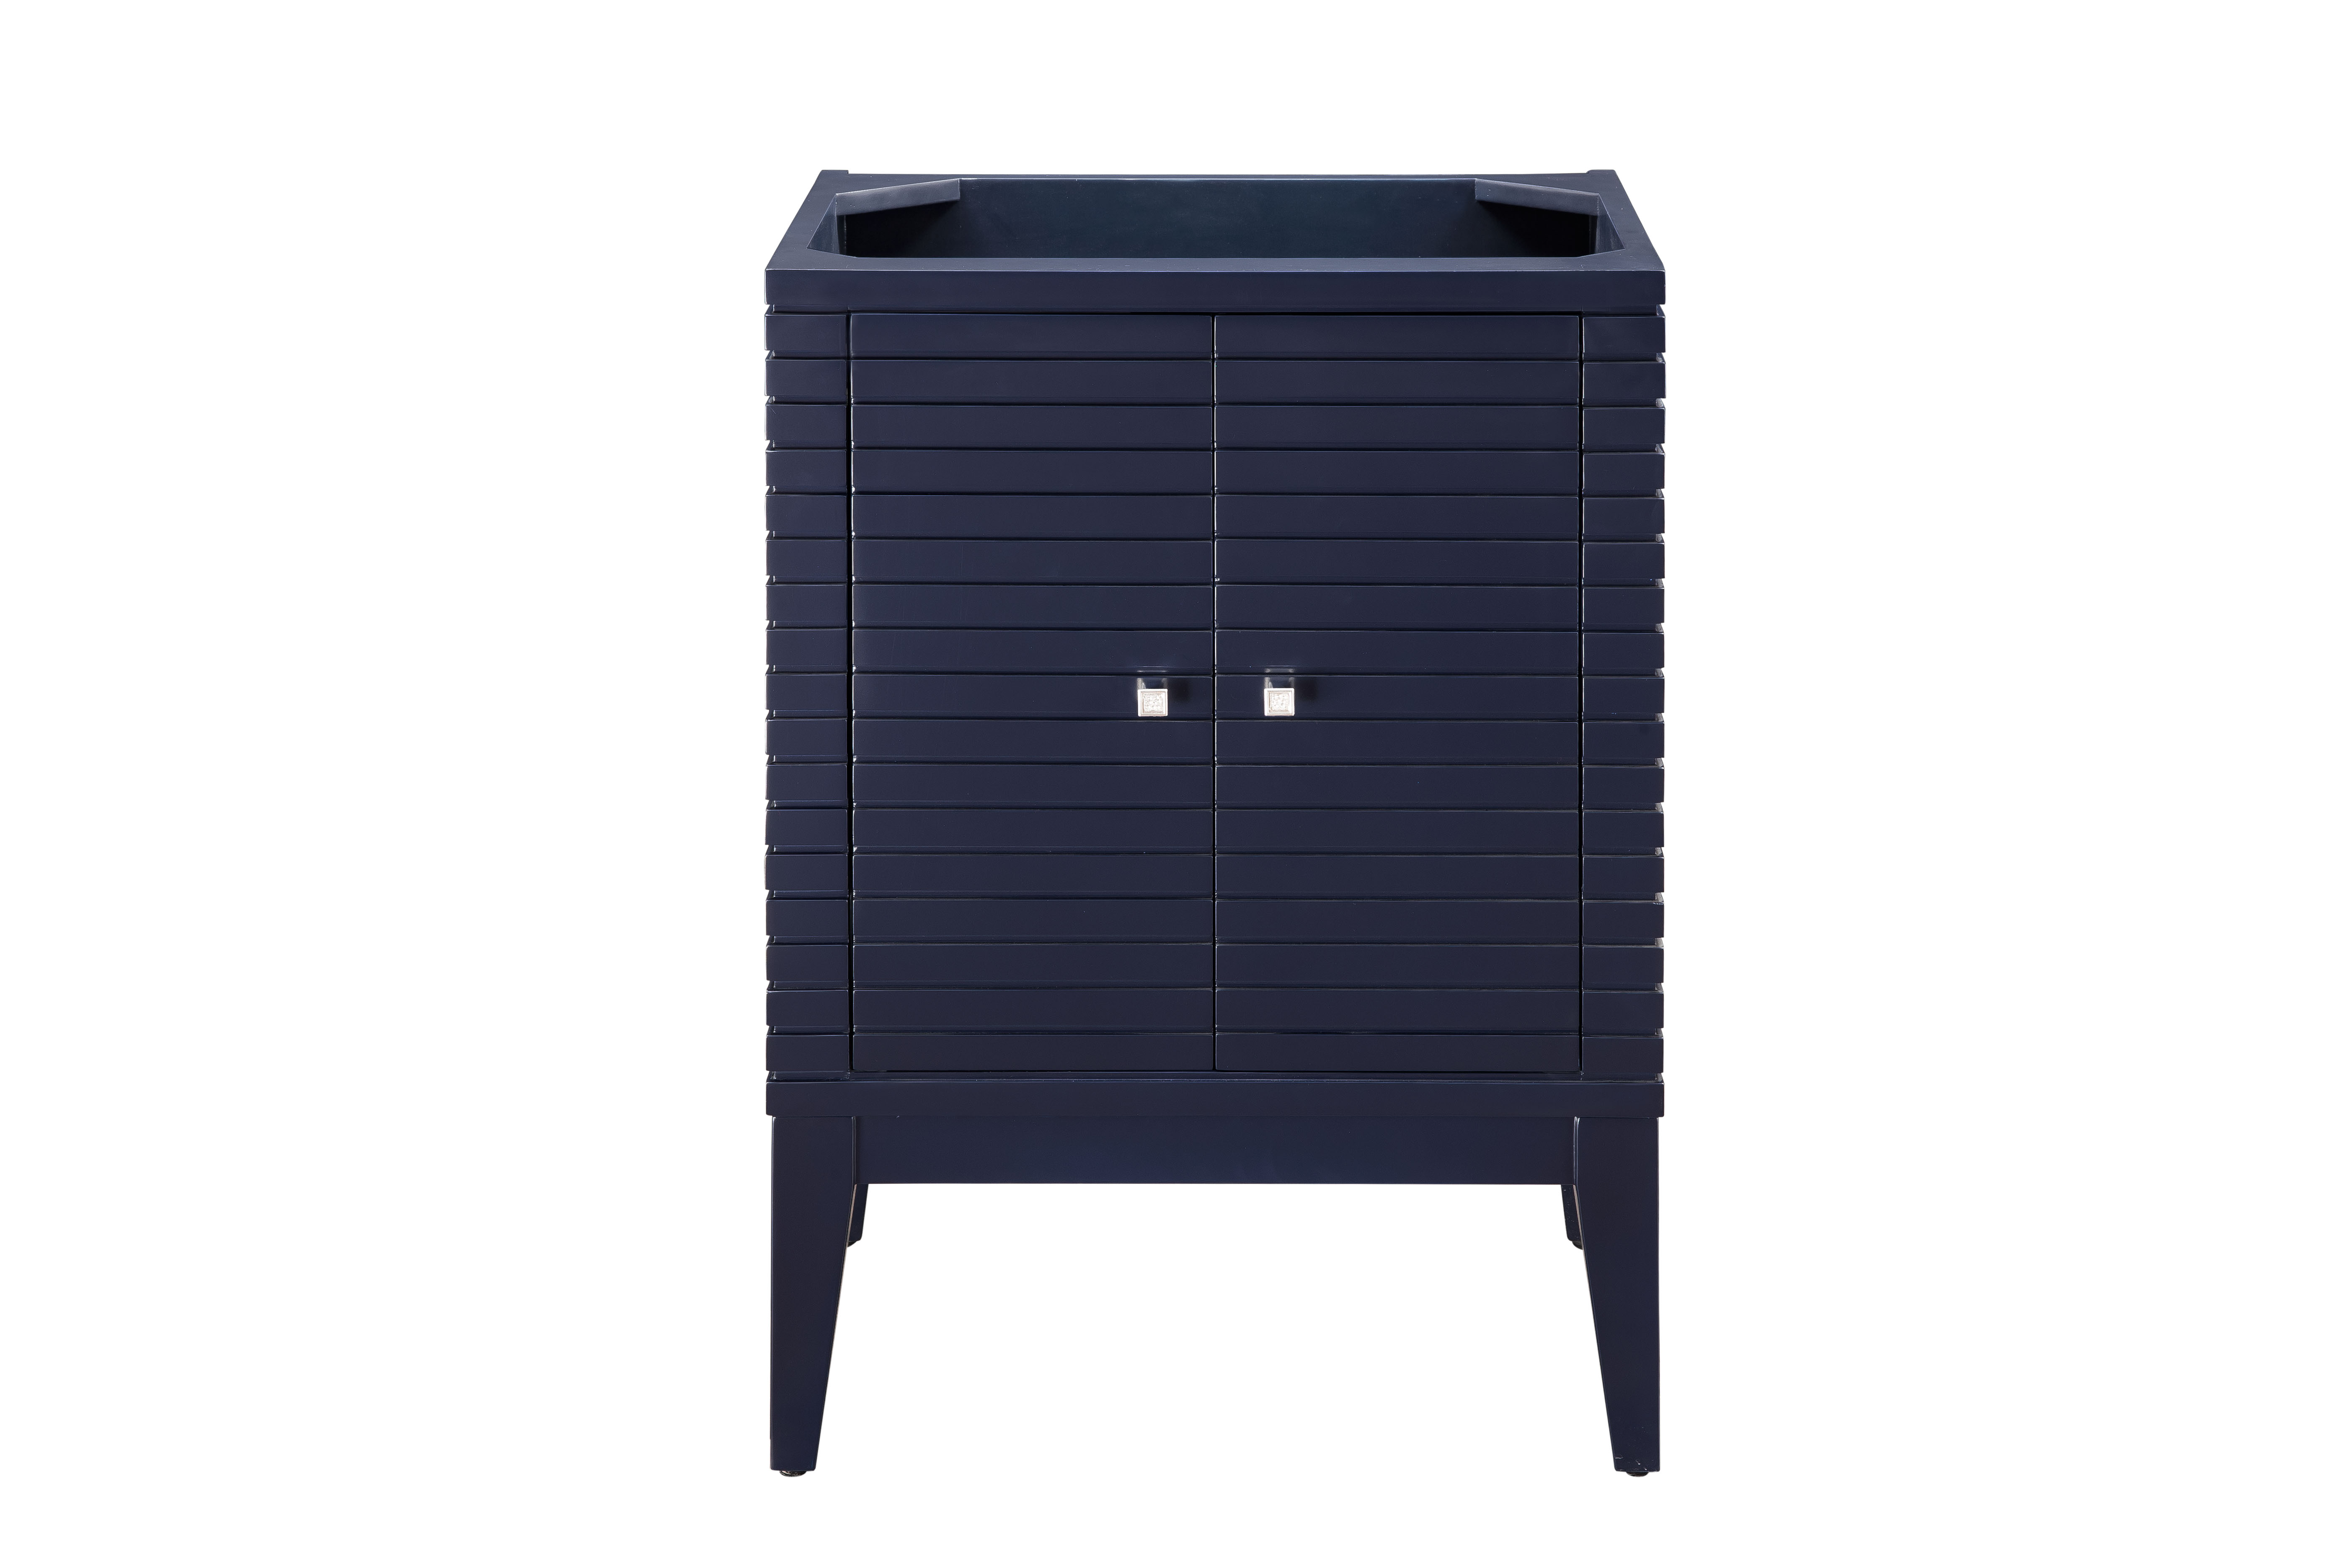 James Martin E213-V24-NVB Linden 24" Single Vanity Cabinet, Navy Blue